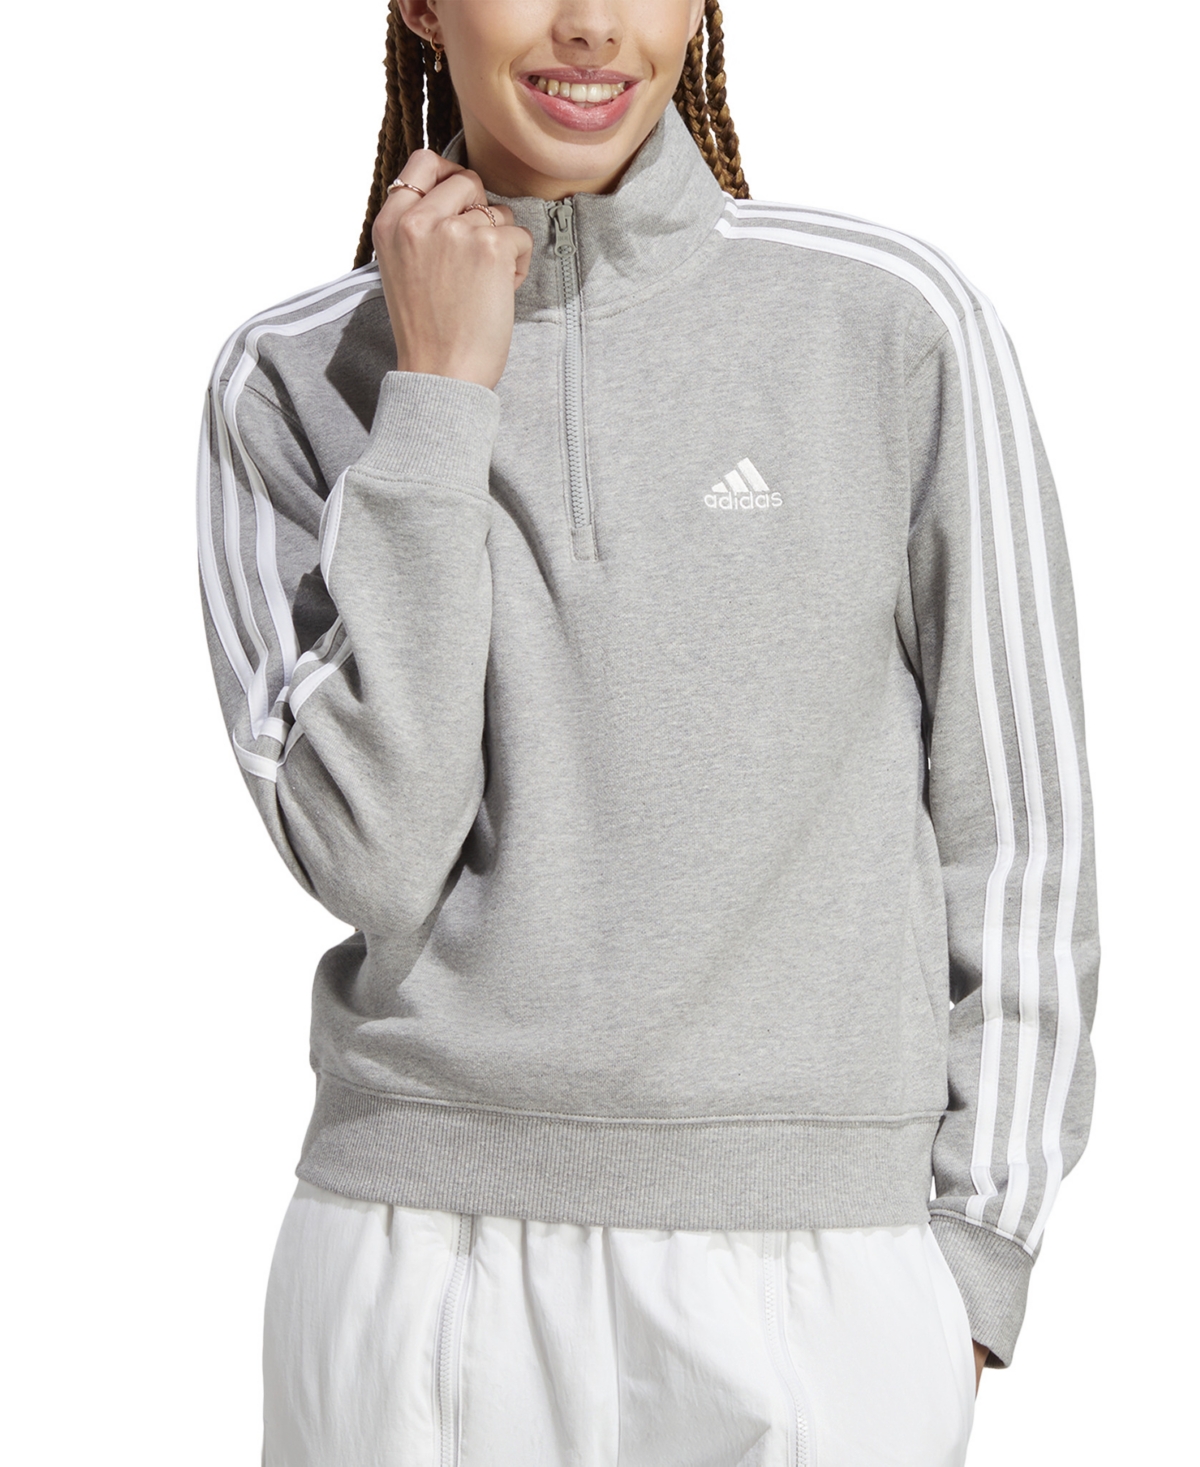 Shop Adidas Originals Women's Cotton 3-stripes Quarter-zip Sweatshirt In Medium Grey Heather,white